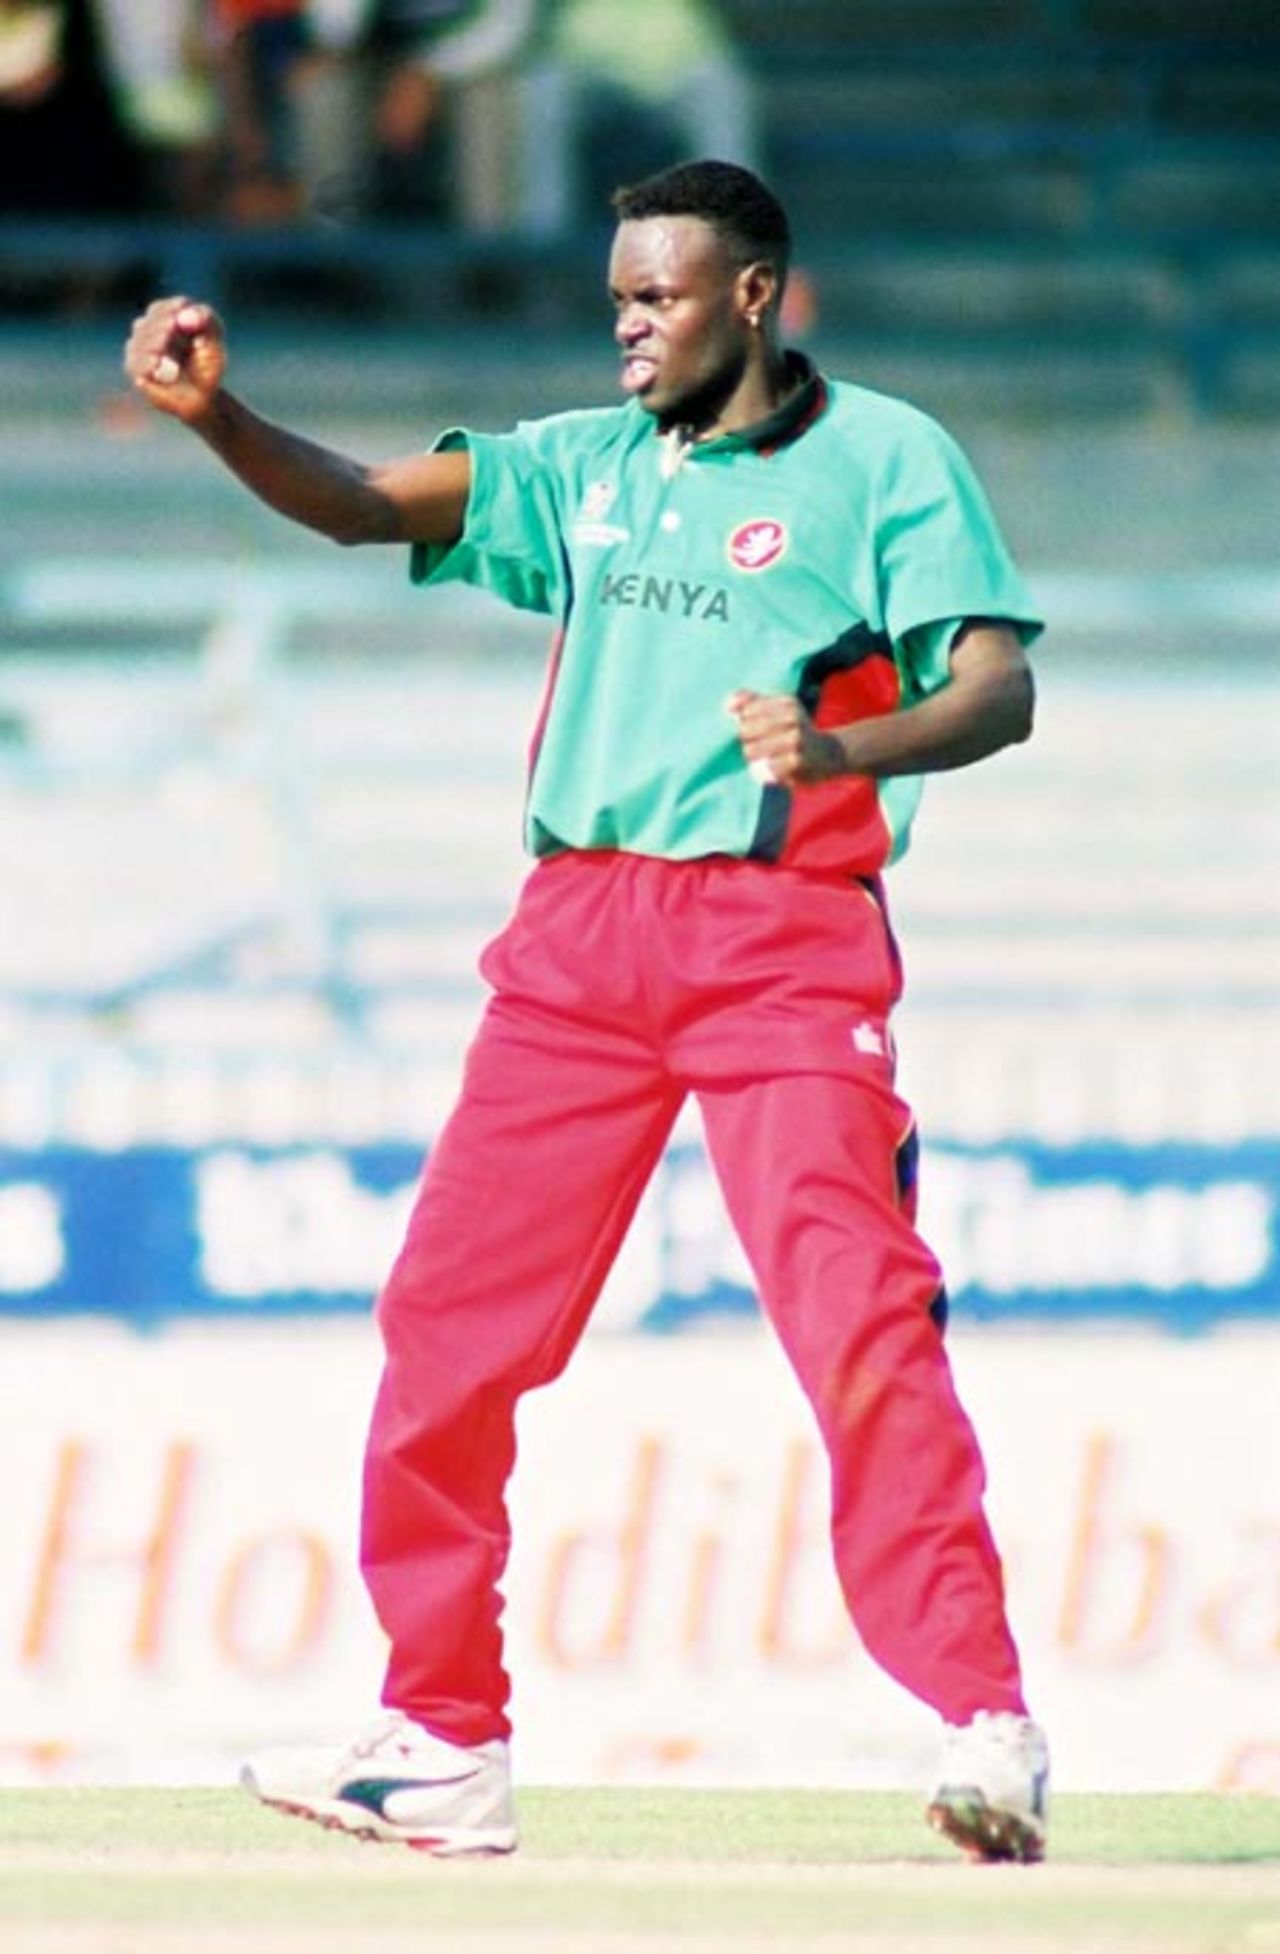 Tony Suji celebrating, 4th Match: Kenya v Sri Lanka, Cherry Blossom Sharjah Cup, 6 Apr 2003